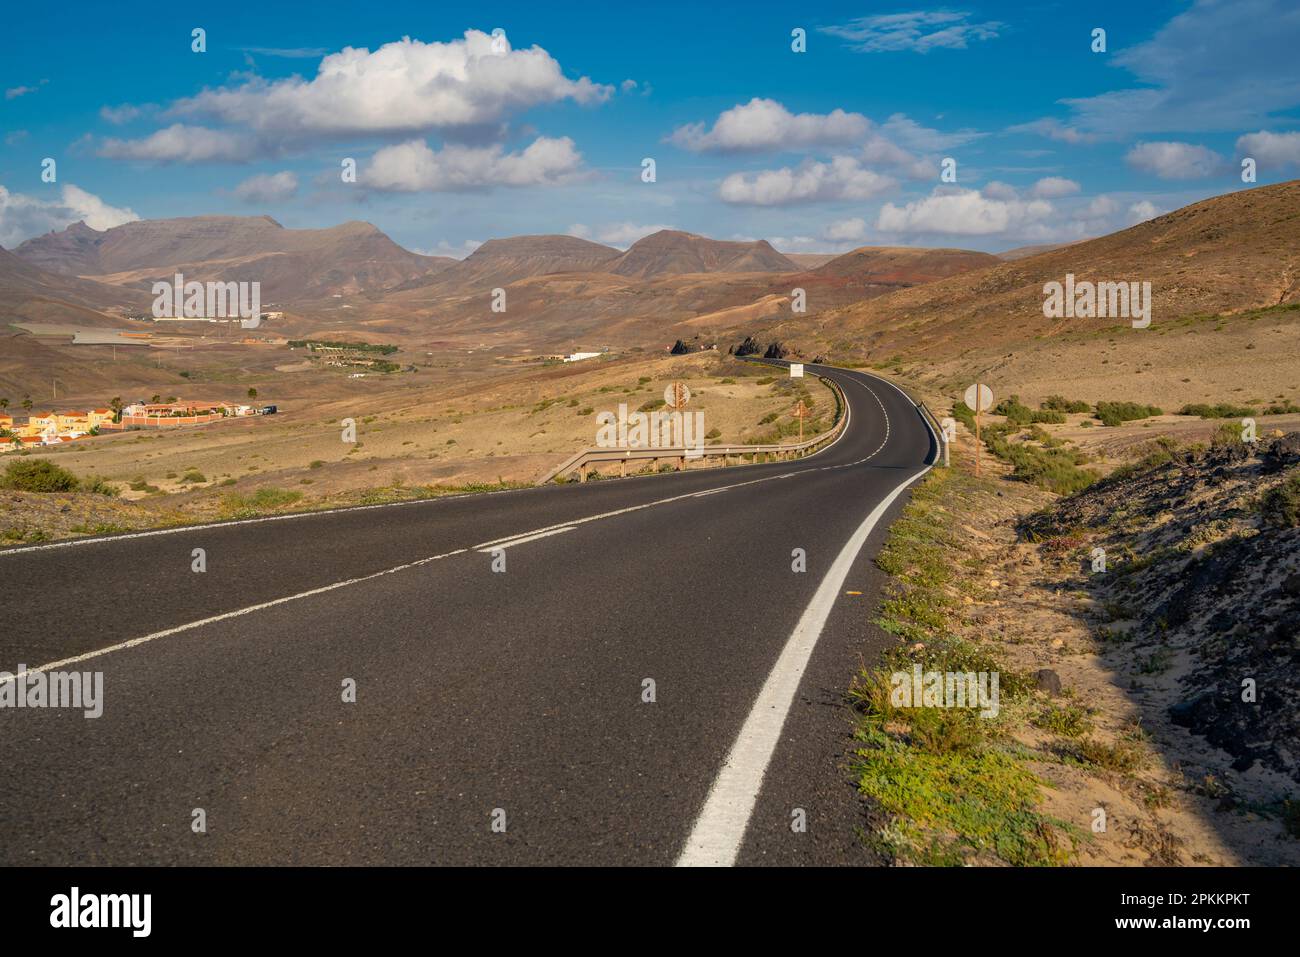 Vue sur la route, le paysage et les montagnes près de la Pared, la Pared, Fuerteventura, îles Canaries, Espagne, Atlantique, Europe Banque D'Images